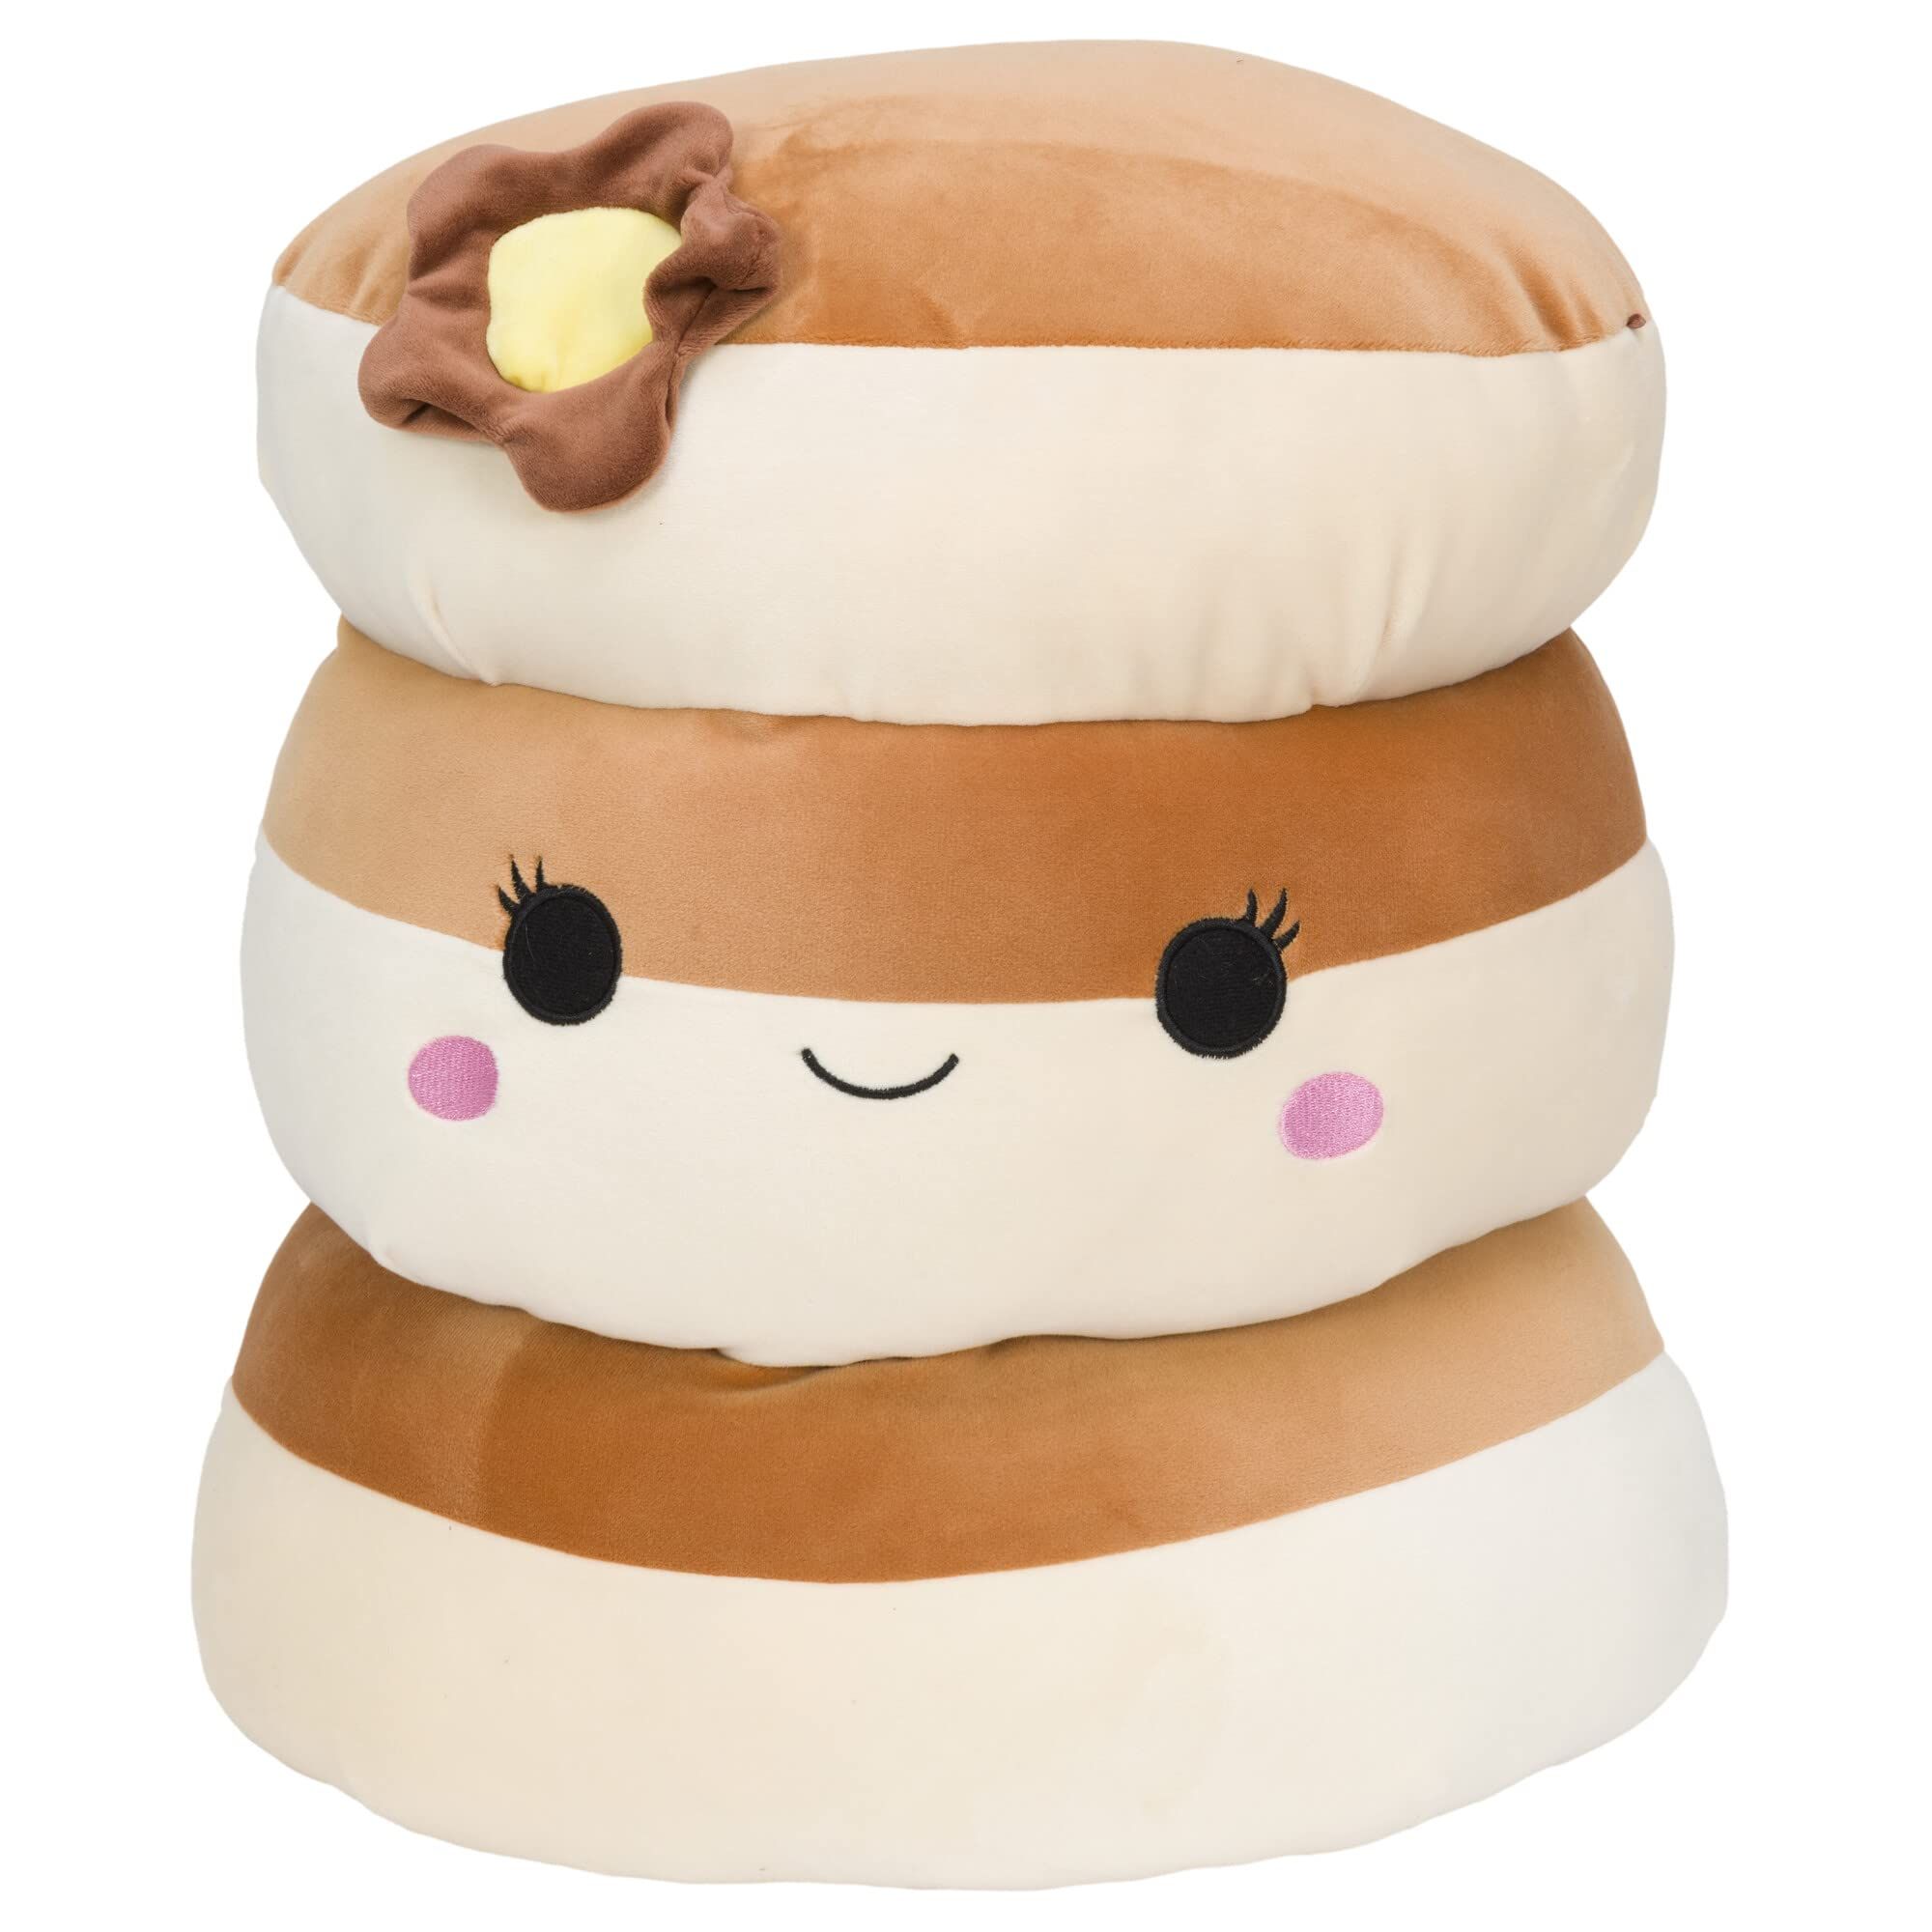 Squishmallows 12-Inch Pancake Plush - Add Rayen to Your Squad, Ultrasoft Stuffed